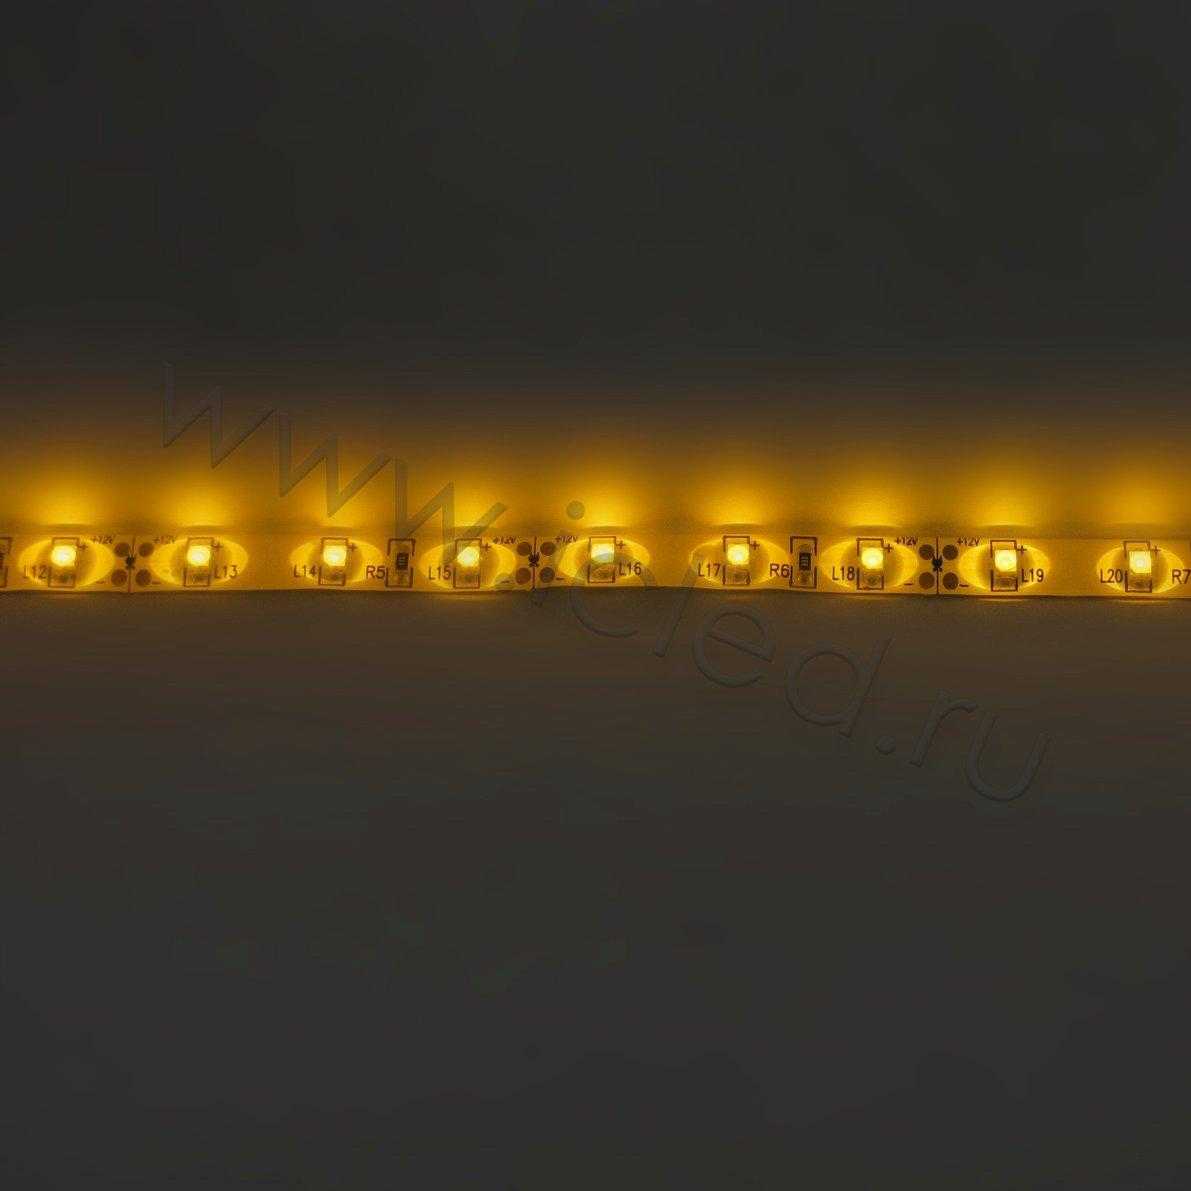 Влагозащищенные светодиодные ленты Светодиодная лента Standart PRO class, 3528, 60 led/m, Yellow, 12V, IP65 Icled